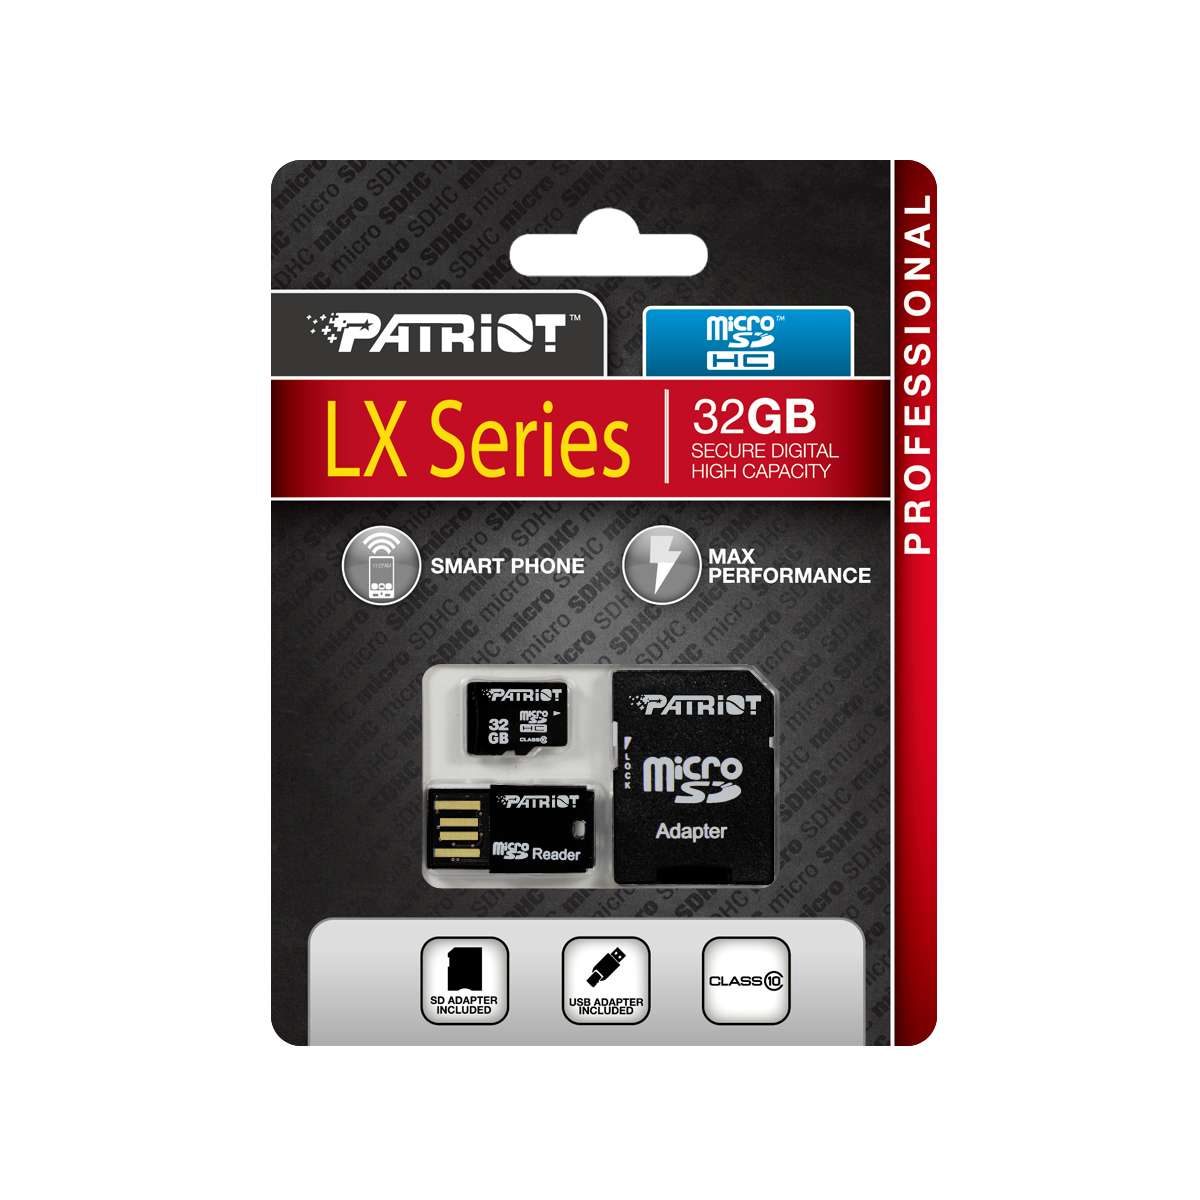 Cartao de Memoria 32GB Micro SDHC Classe 10 com Adpatador SD/USB LX Series PSF32GMCSHC10UK - Patriot